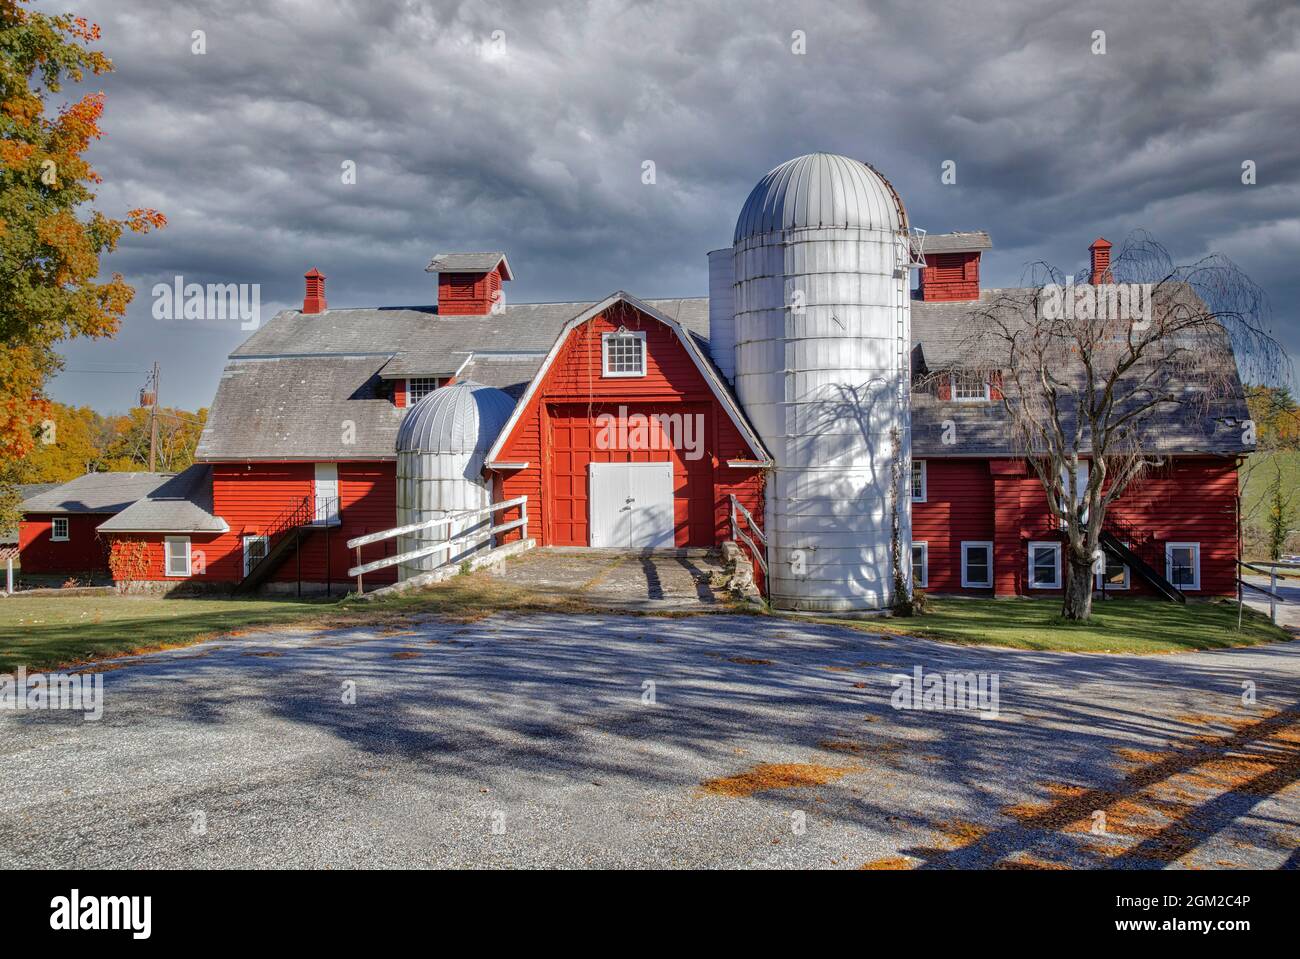 Red Barn and Silo - lumière chaude de l'après-midi tombe sur cette grange et silo rouge en activité dans le comté de Sussex, NJ. Cette image est également disponible en noir et blanc Banque D'Images